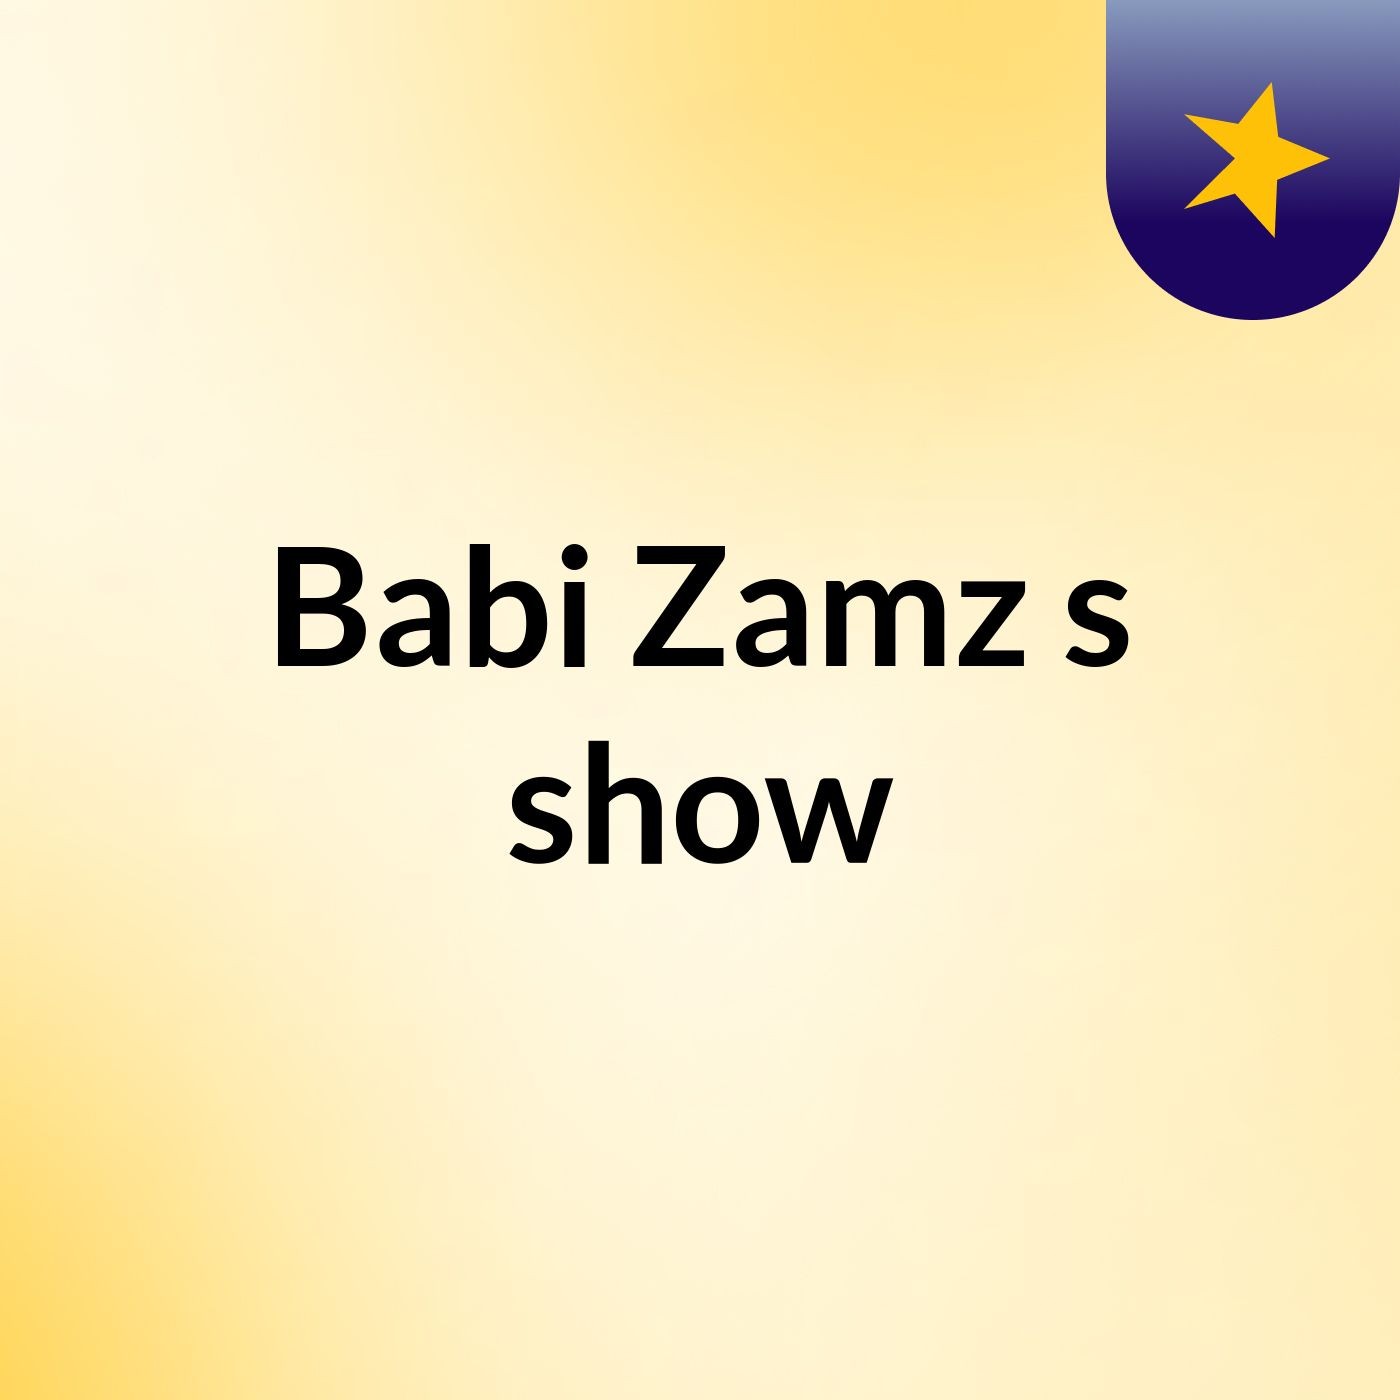 Babi Zamz's show